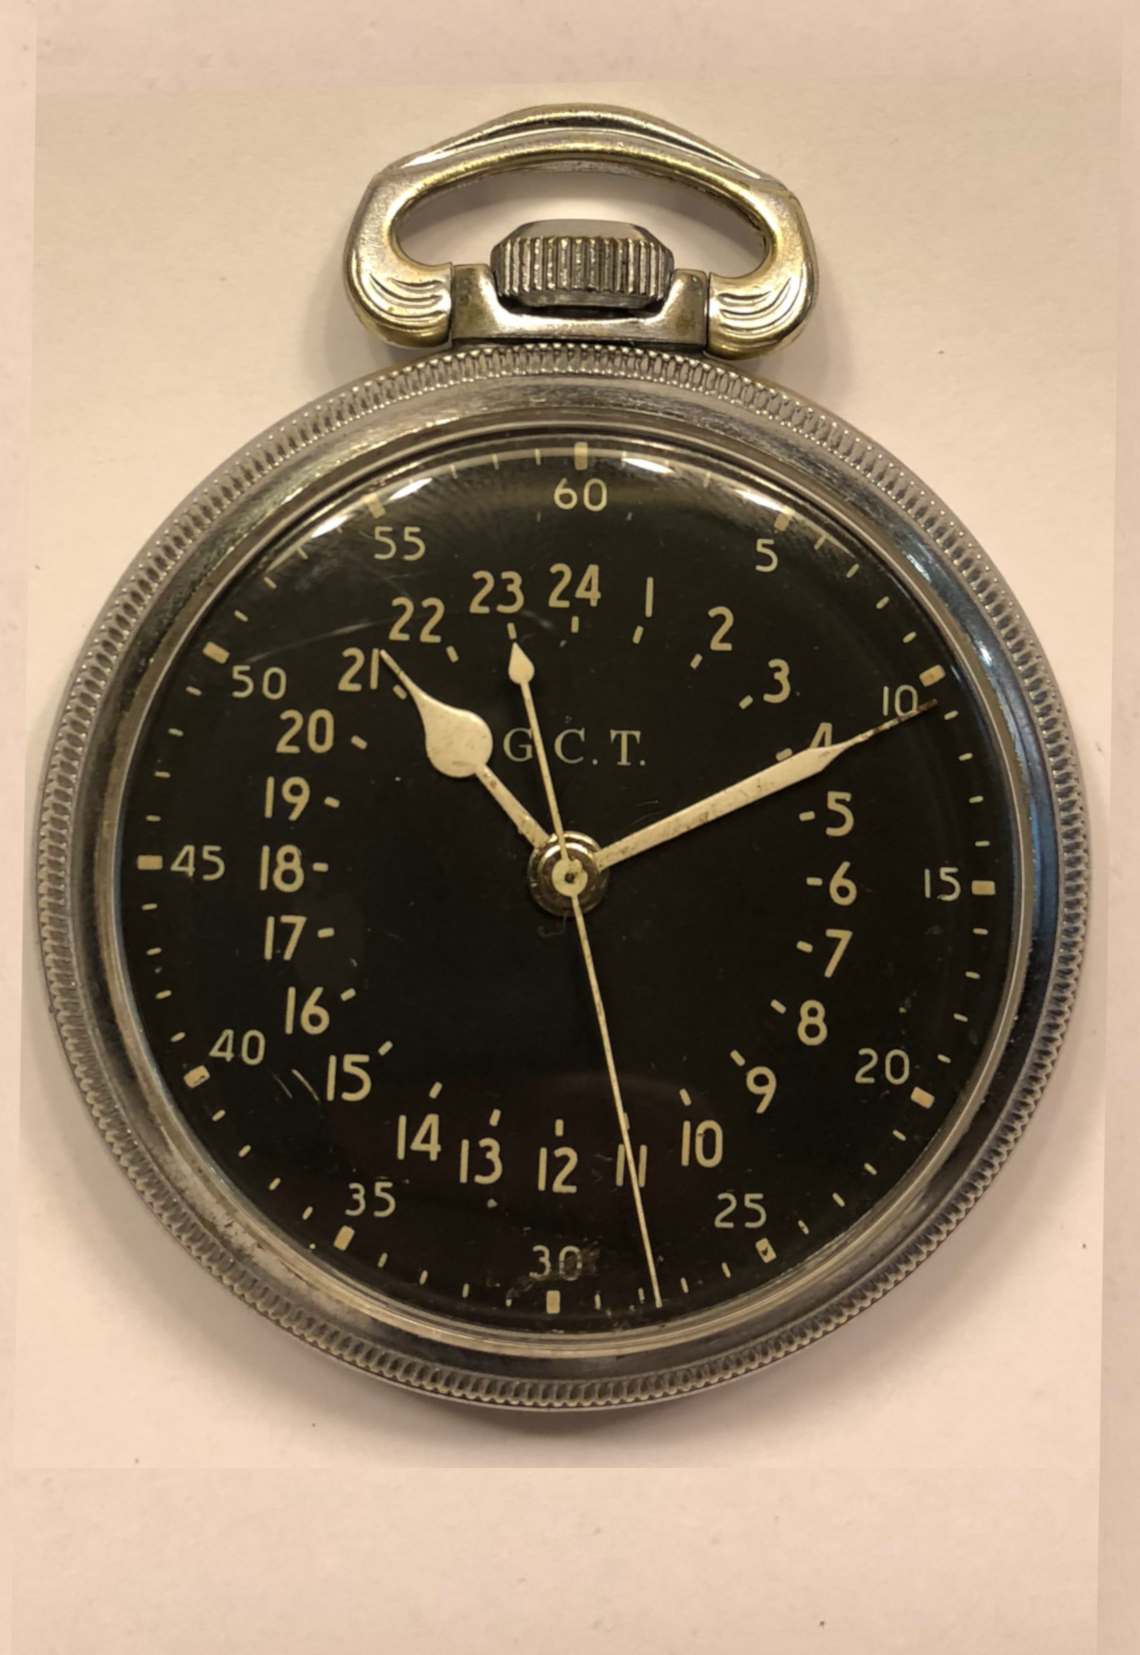 Reloj de bolsillo HAMILTON WATCH Co. G.C.T. Civil Time”, 24 horas, propiedad Gobierno de los EE.UU para la II Guerra Mundial (Desembarco de Pearl Harbour, 1941) | Museo Internacional de